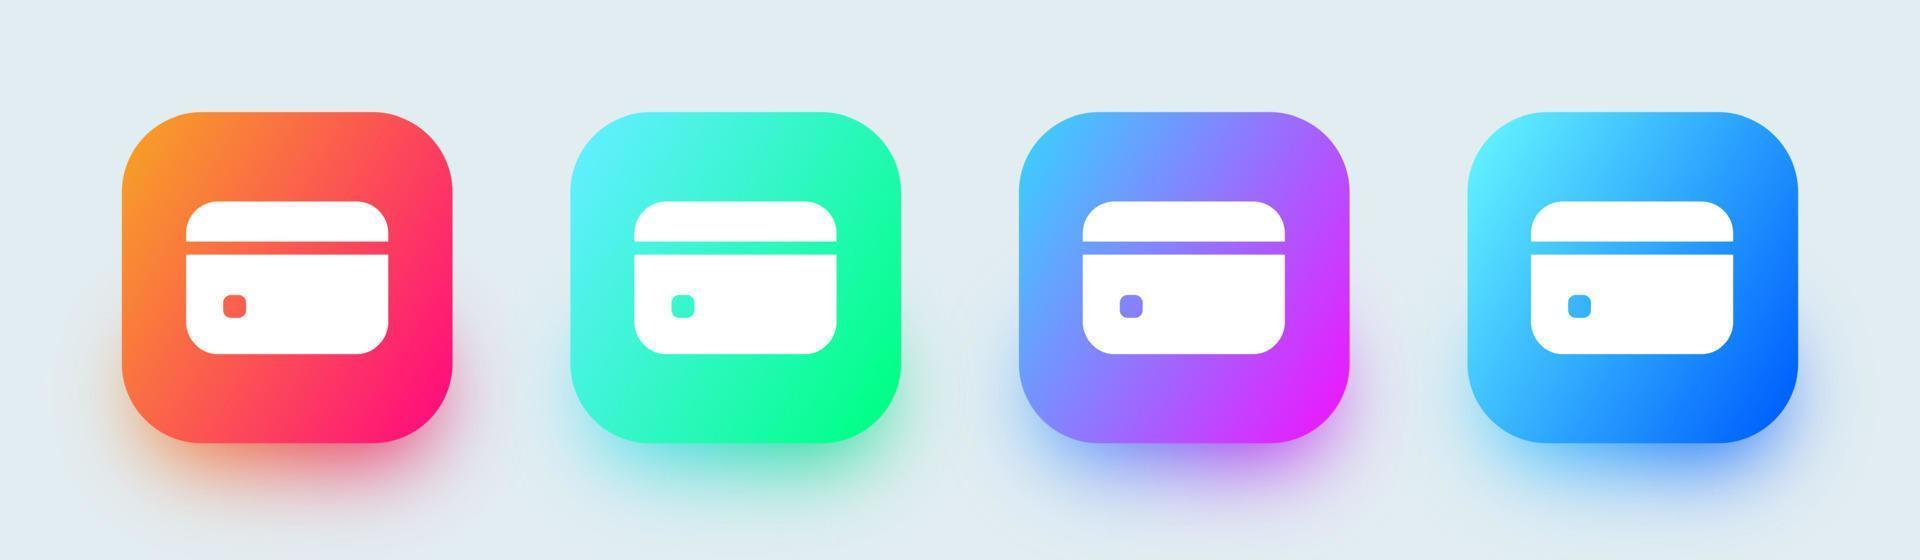 ícone sólido de cartão de crédito em cores gradientes quadrados. ilustração em vetor cartão de pagamento.